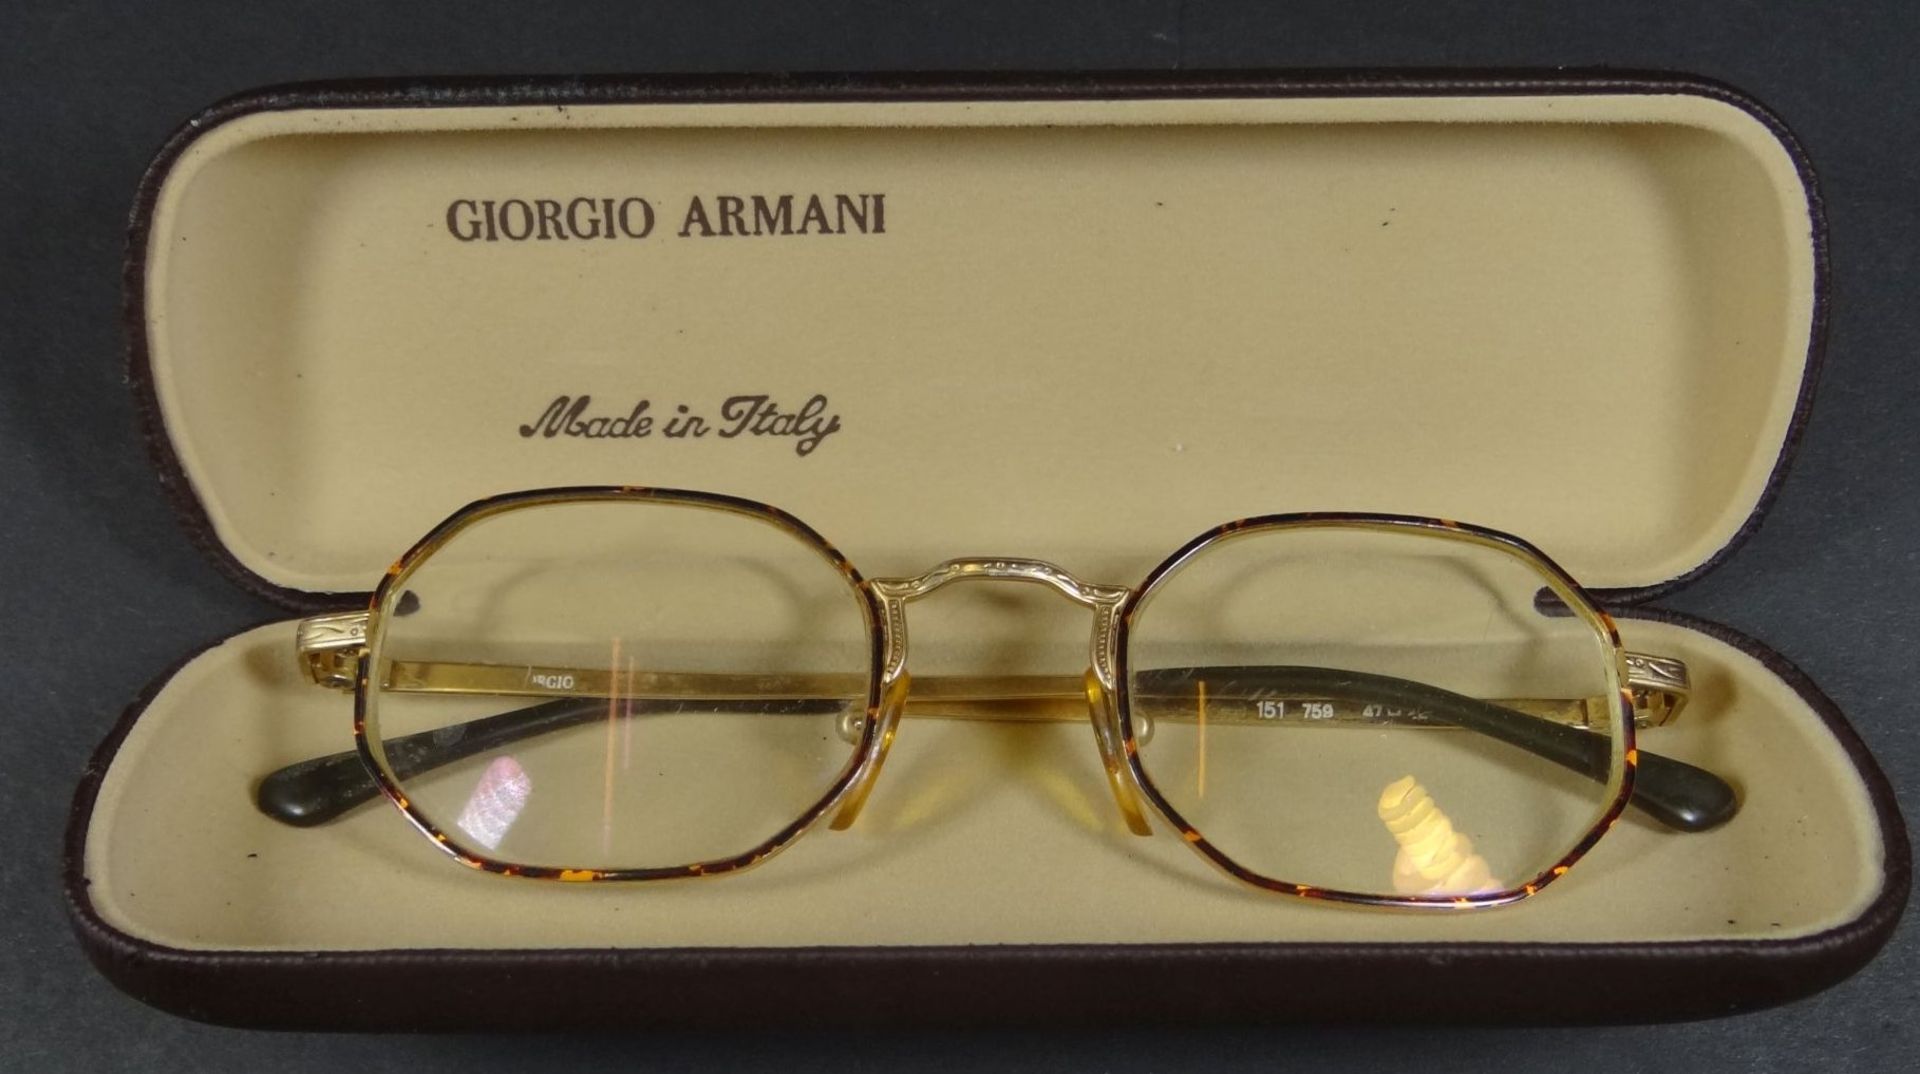 Brille in Etui "Giorgio Armani", Alters-u. Gebrauchsspuren